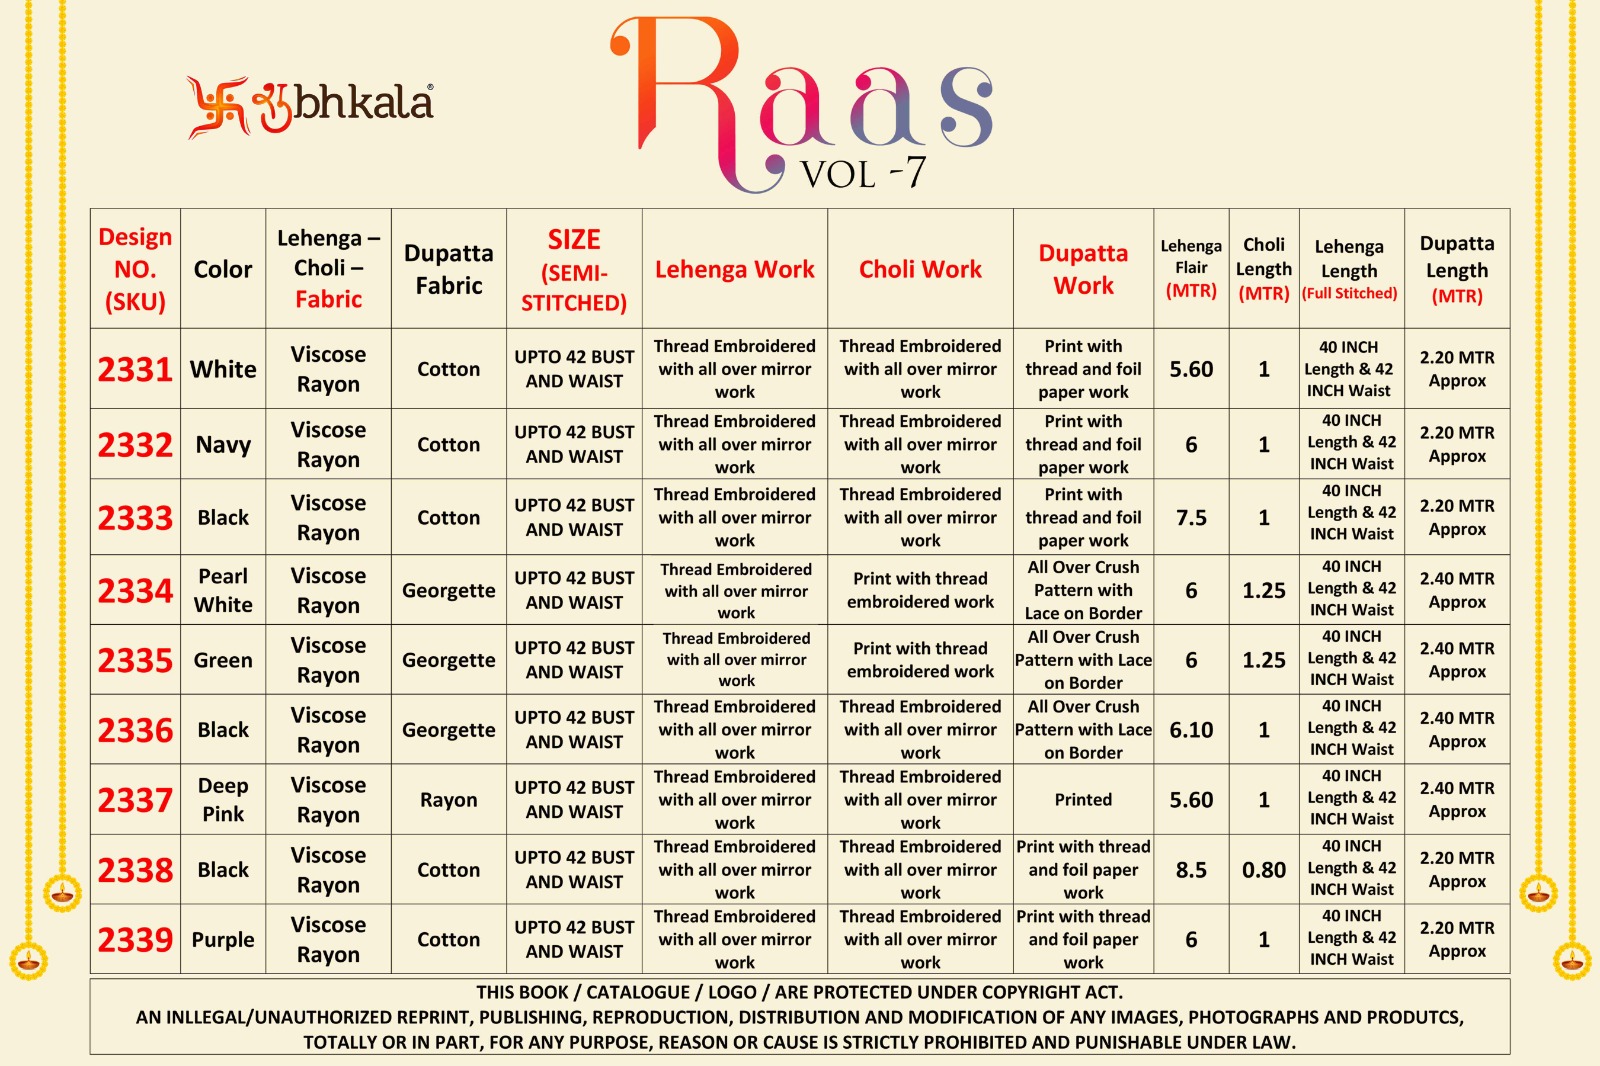 Shubhkala Raas Vol 7 collection 13